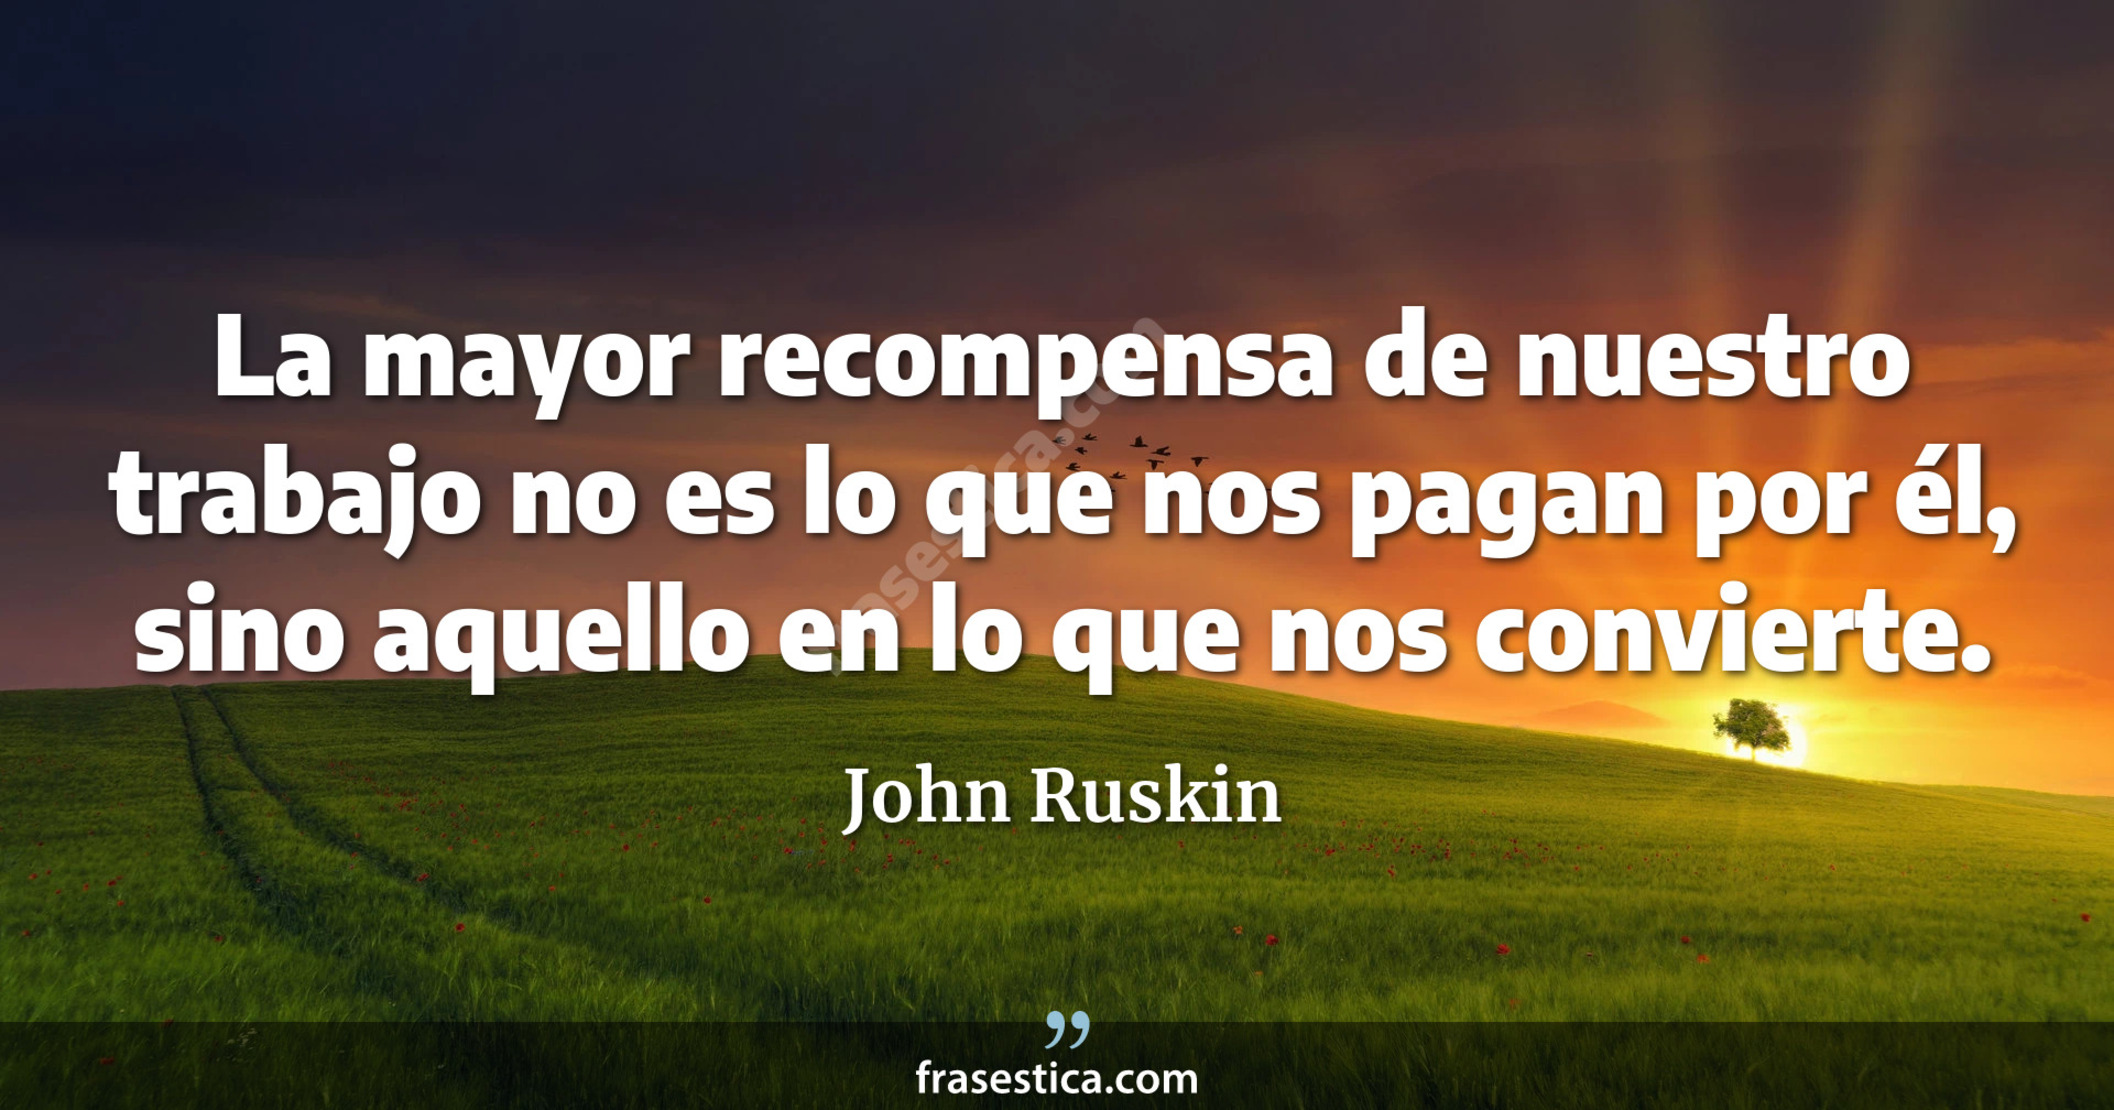 La mayor recompensa de nuestro trabajo no es lo que nos pagan por él, sino aquello en lo que nos convierte. - John Ruskin